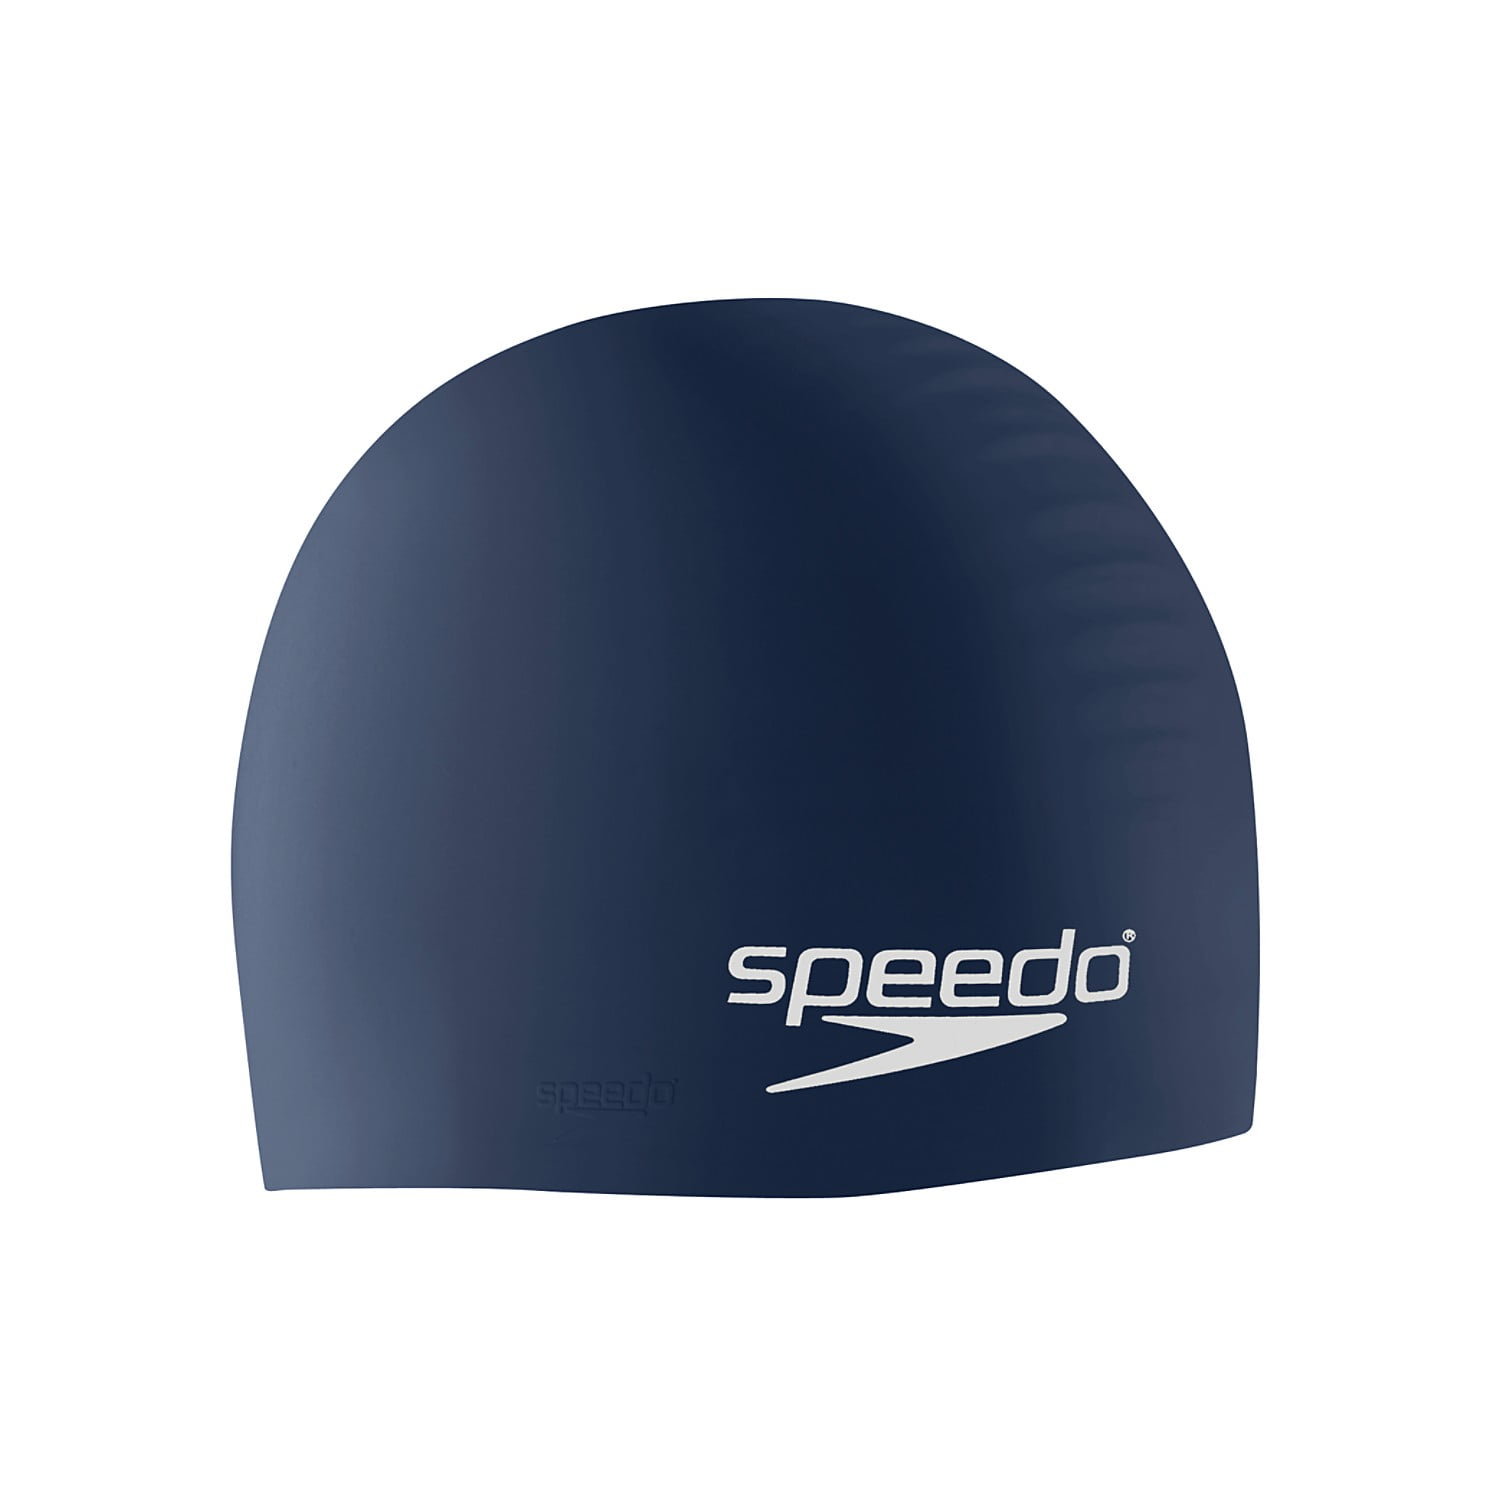 Speedo Long Hair Swim Cap Music Aqua Silicone Swimming Cap 